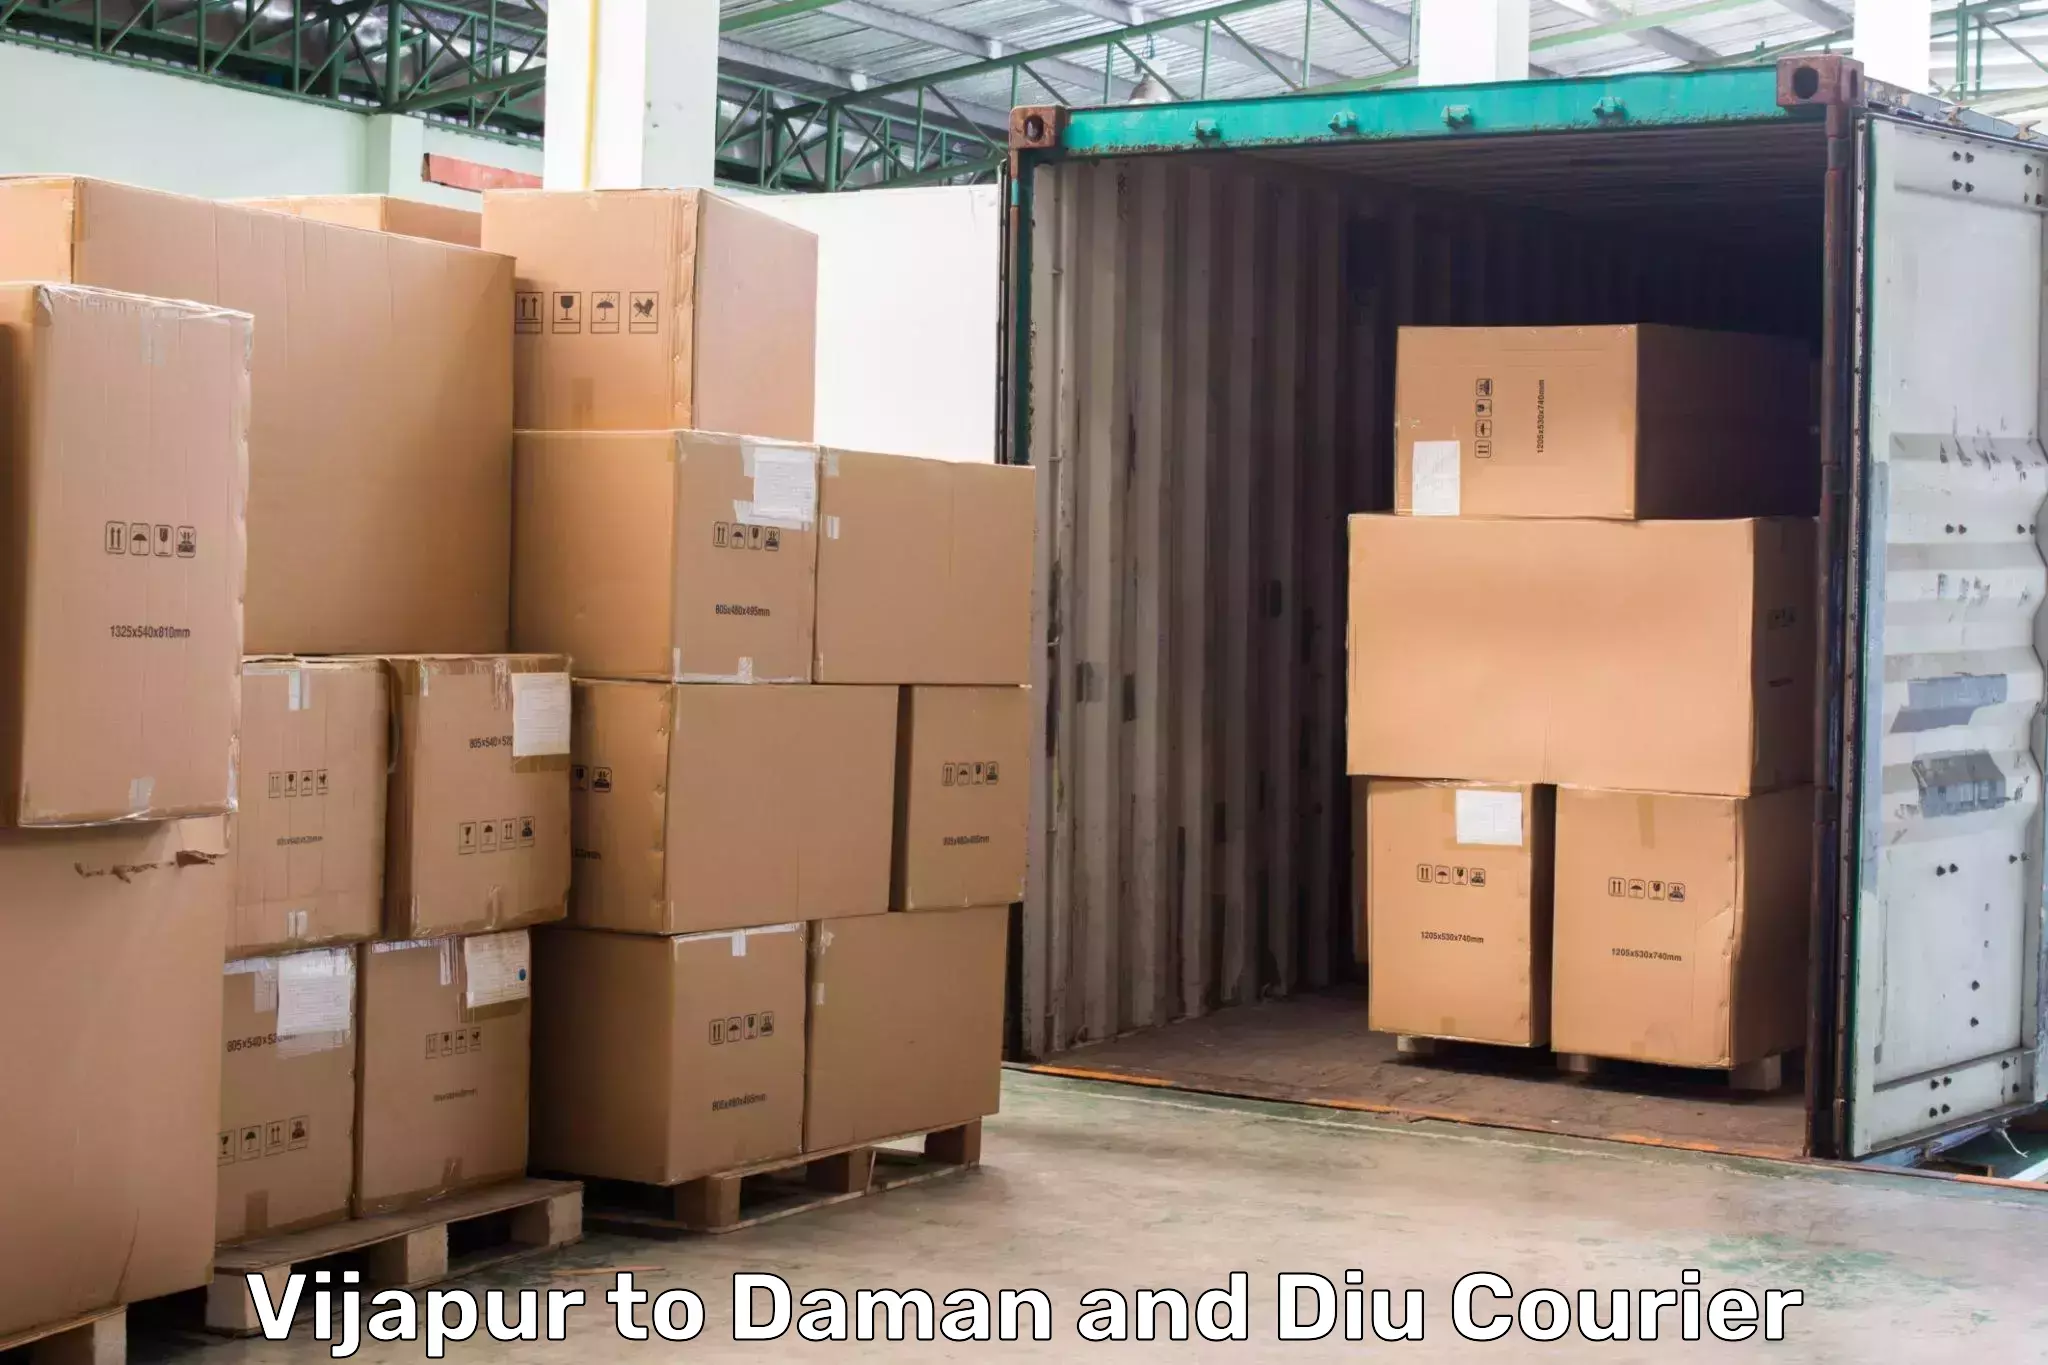 Digital courier platforms Vijapur to Daman and Diu